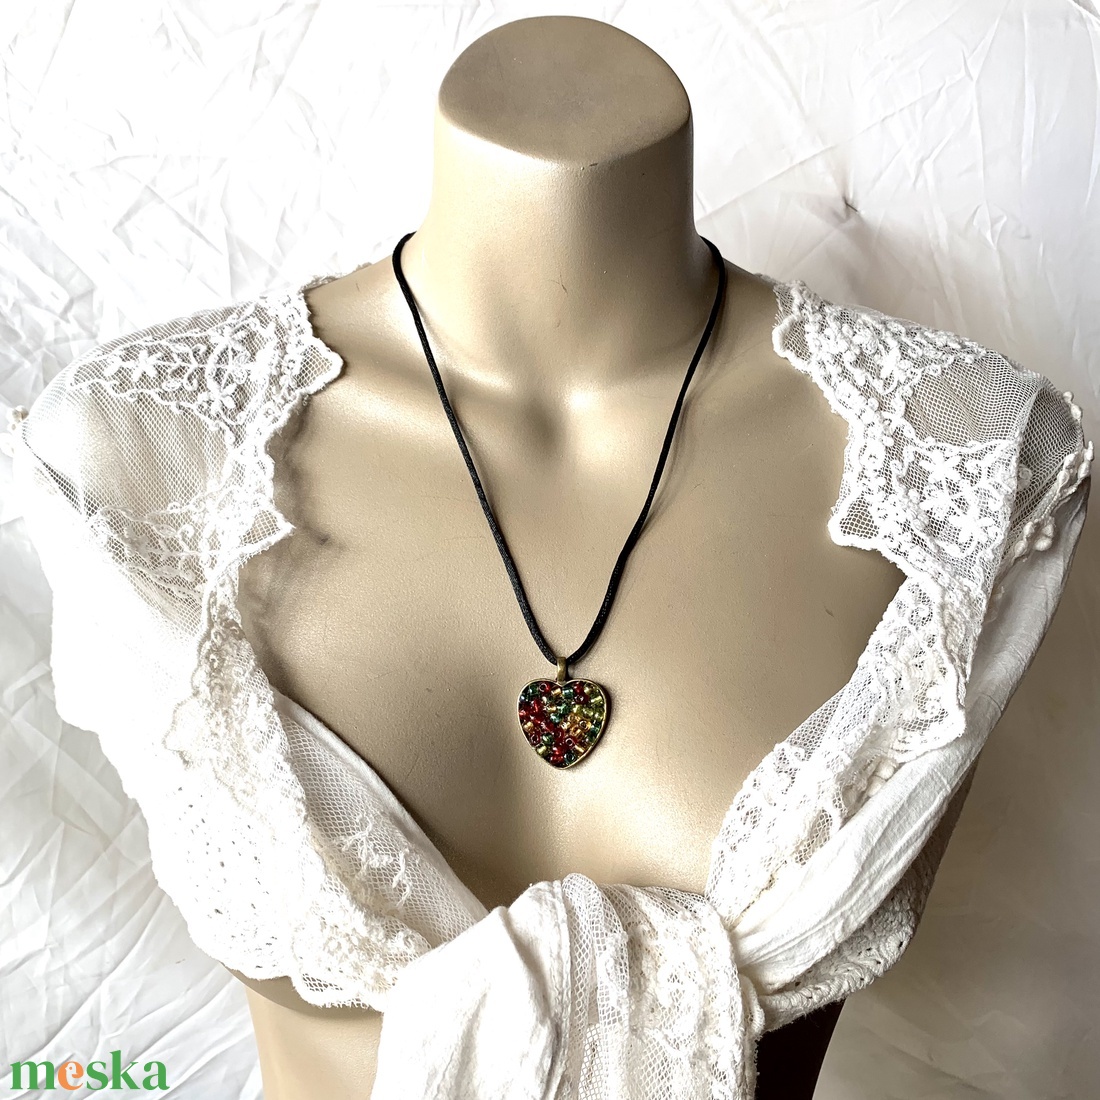 Szív medálos nyaklánc, szív alakú medállal, üveggyöngyökkel, fekete selyemzsinóron - ékszer - nyaklánc - medálos nyaklánc - Meska.hu